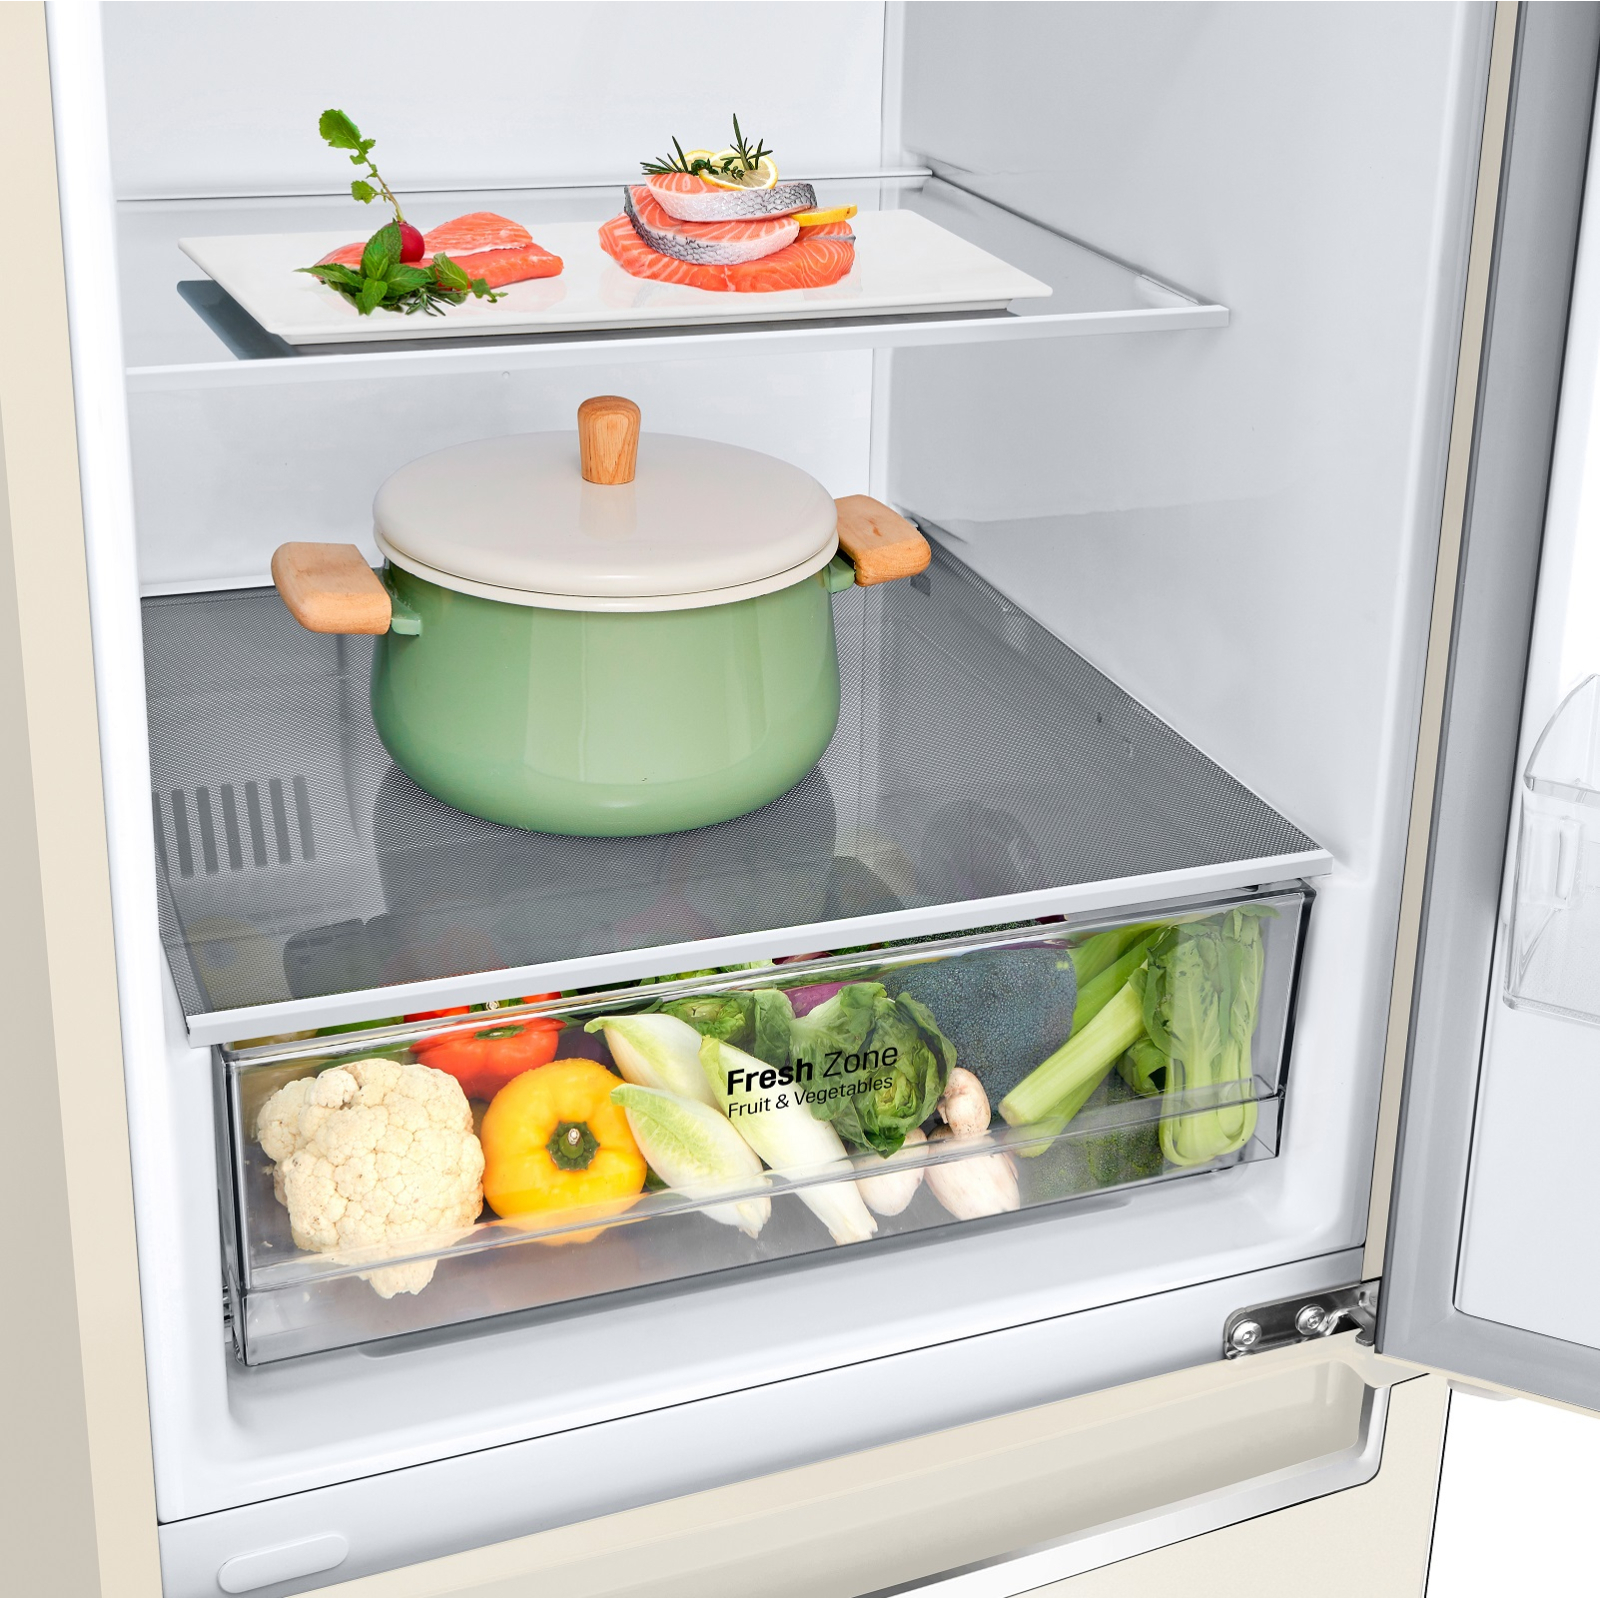 Холодильник LG GW-B459SECM зображення 8